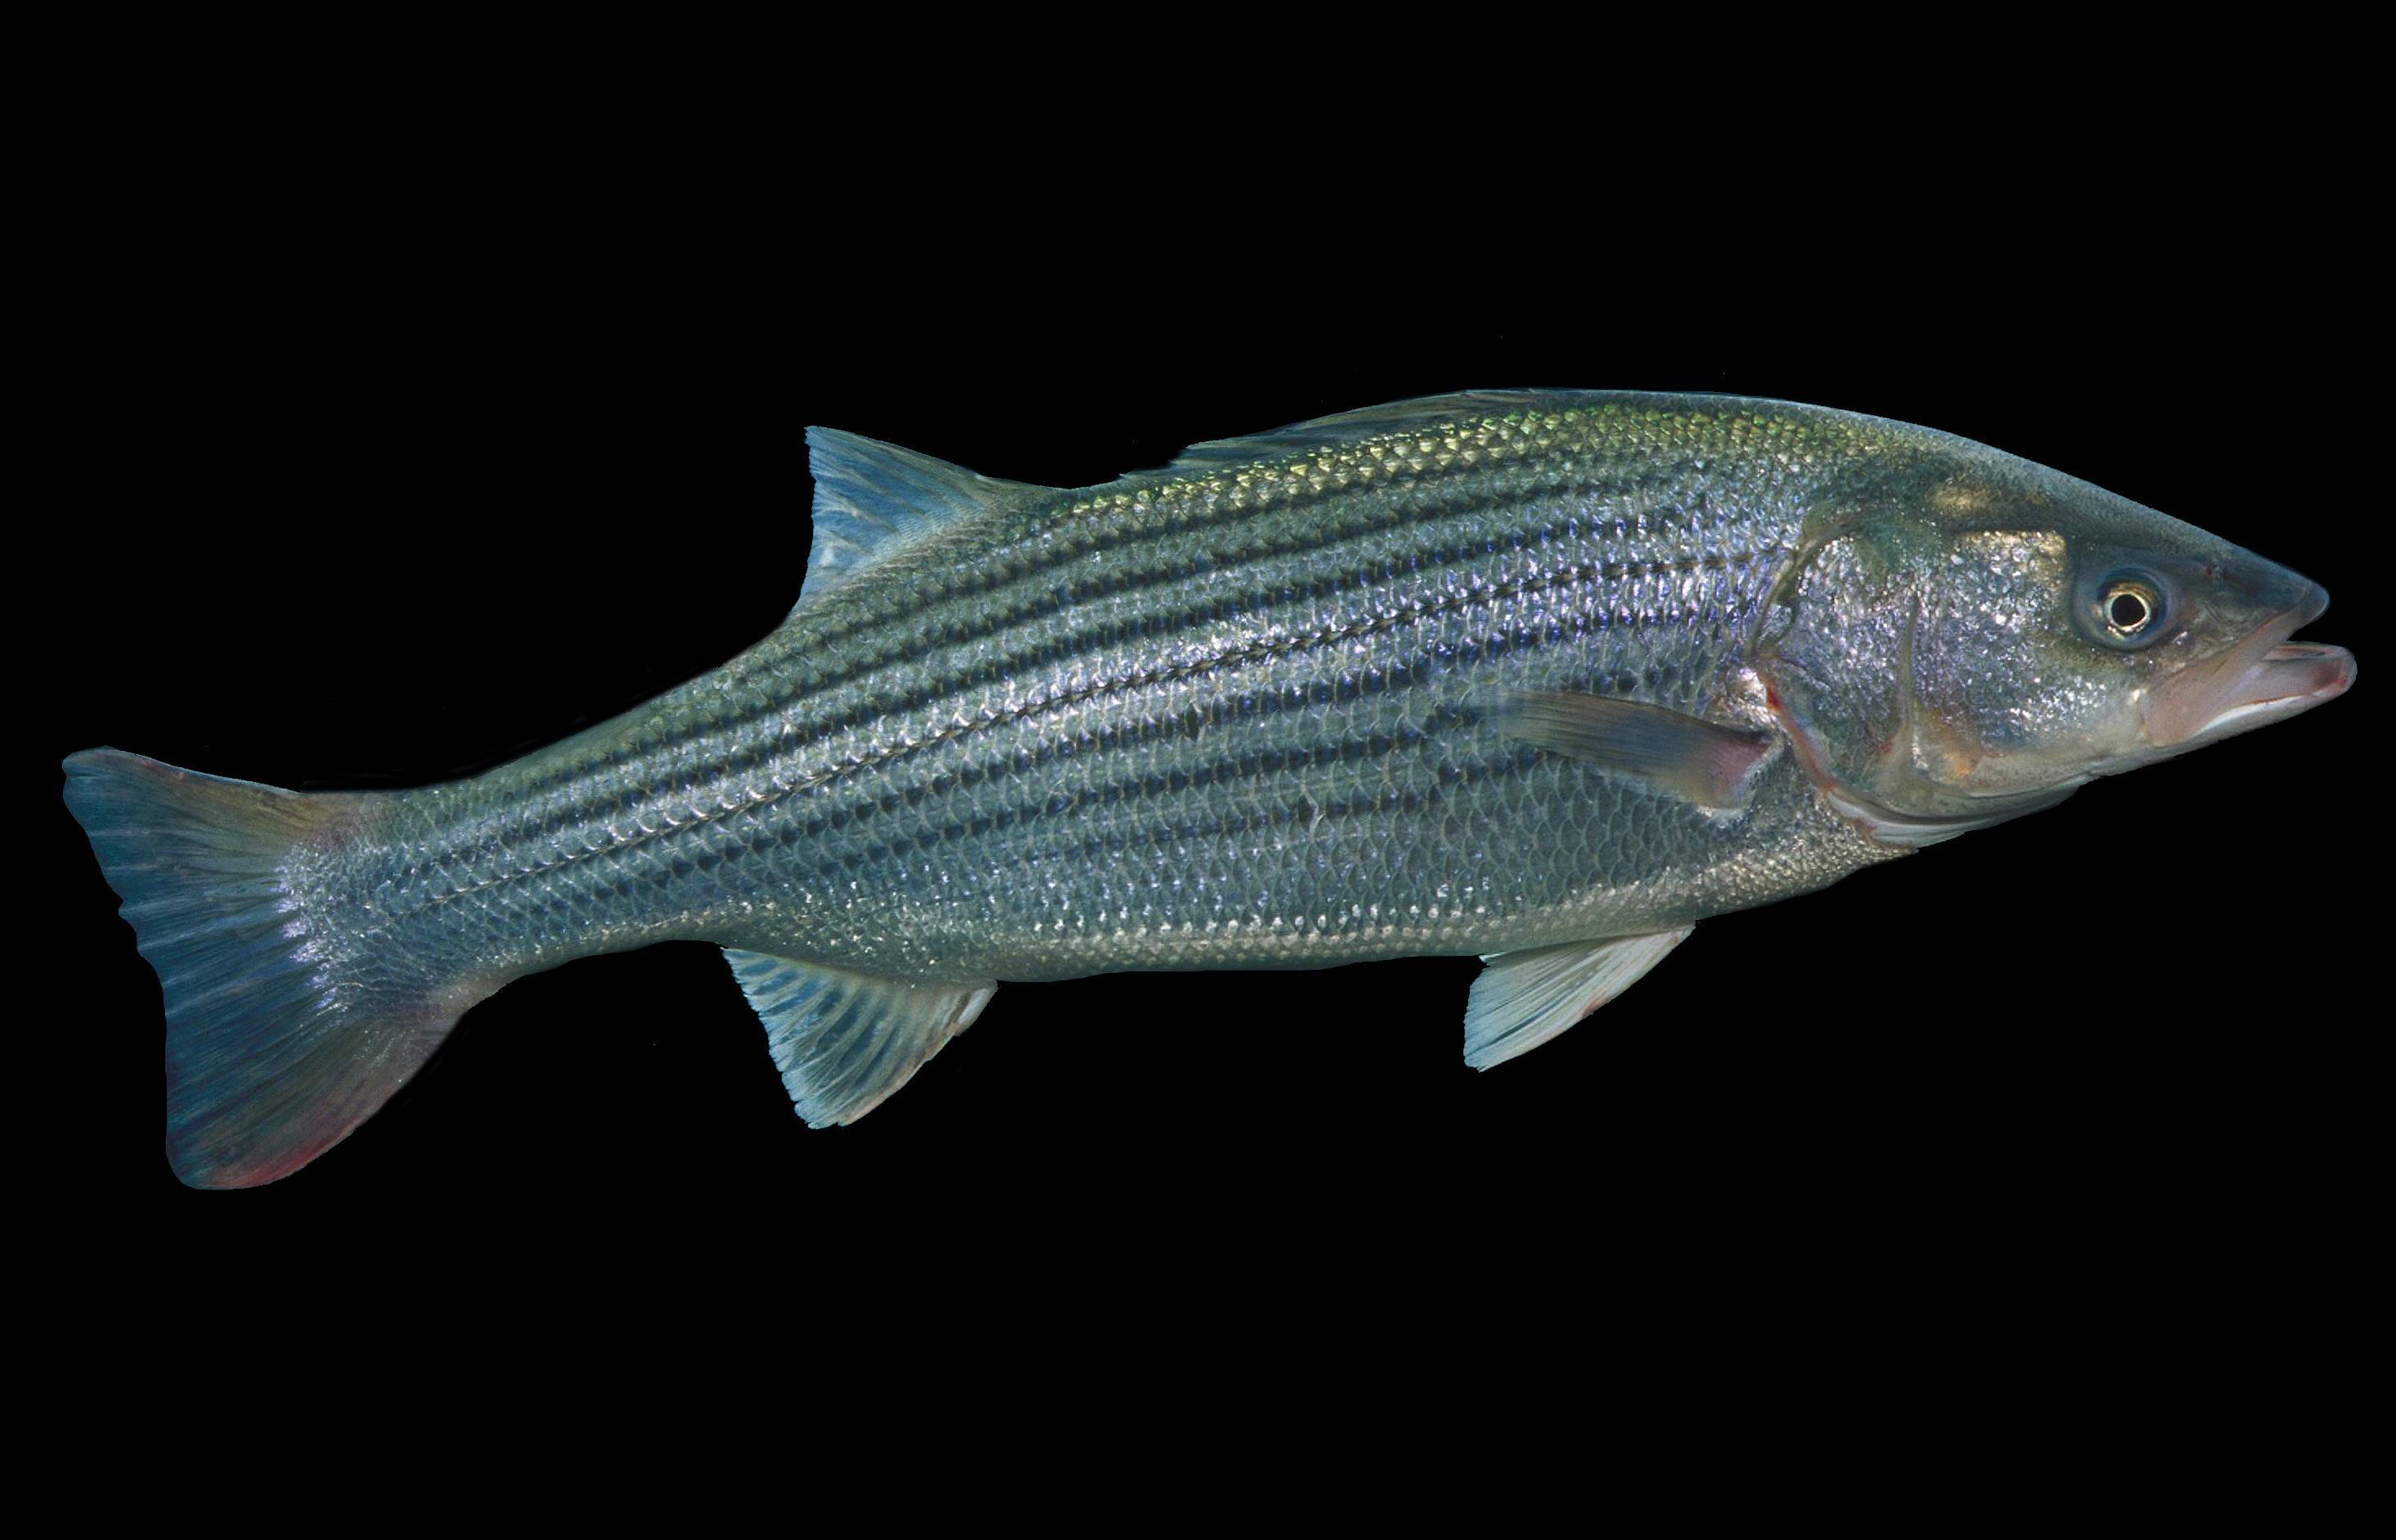 Сибас: описание рыбы, калорийность, места обитания, нерест, способы ловли и образ жизни